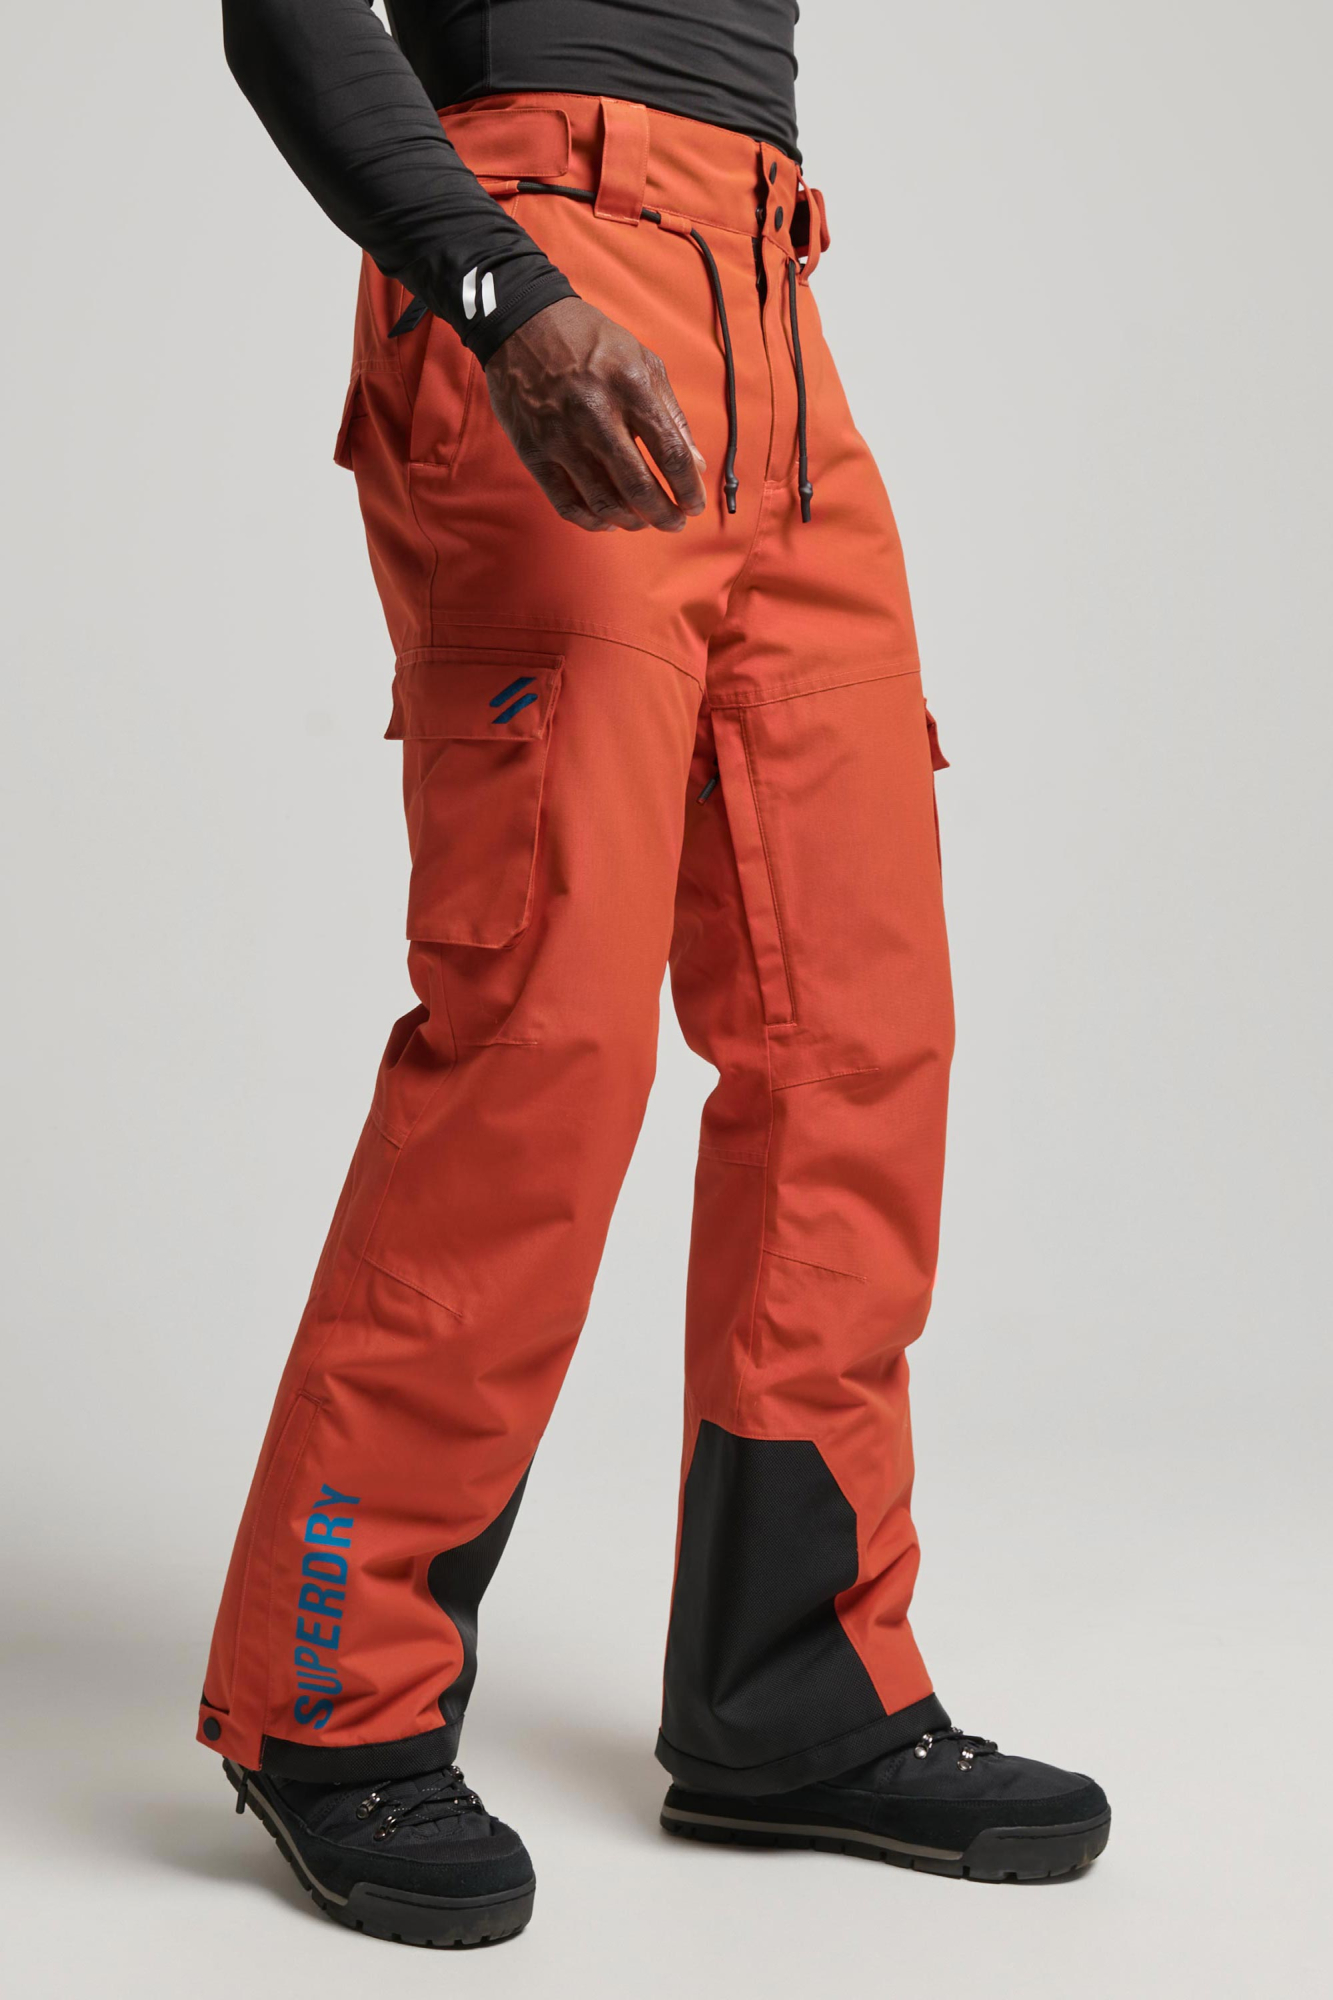 Superdry Mens Ultimate Rescue Pant Orange - Size: Medium